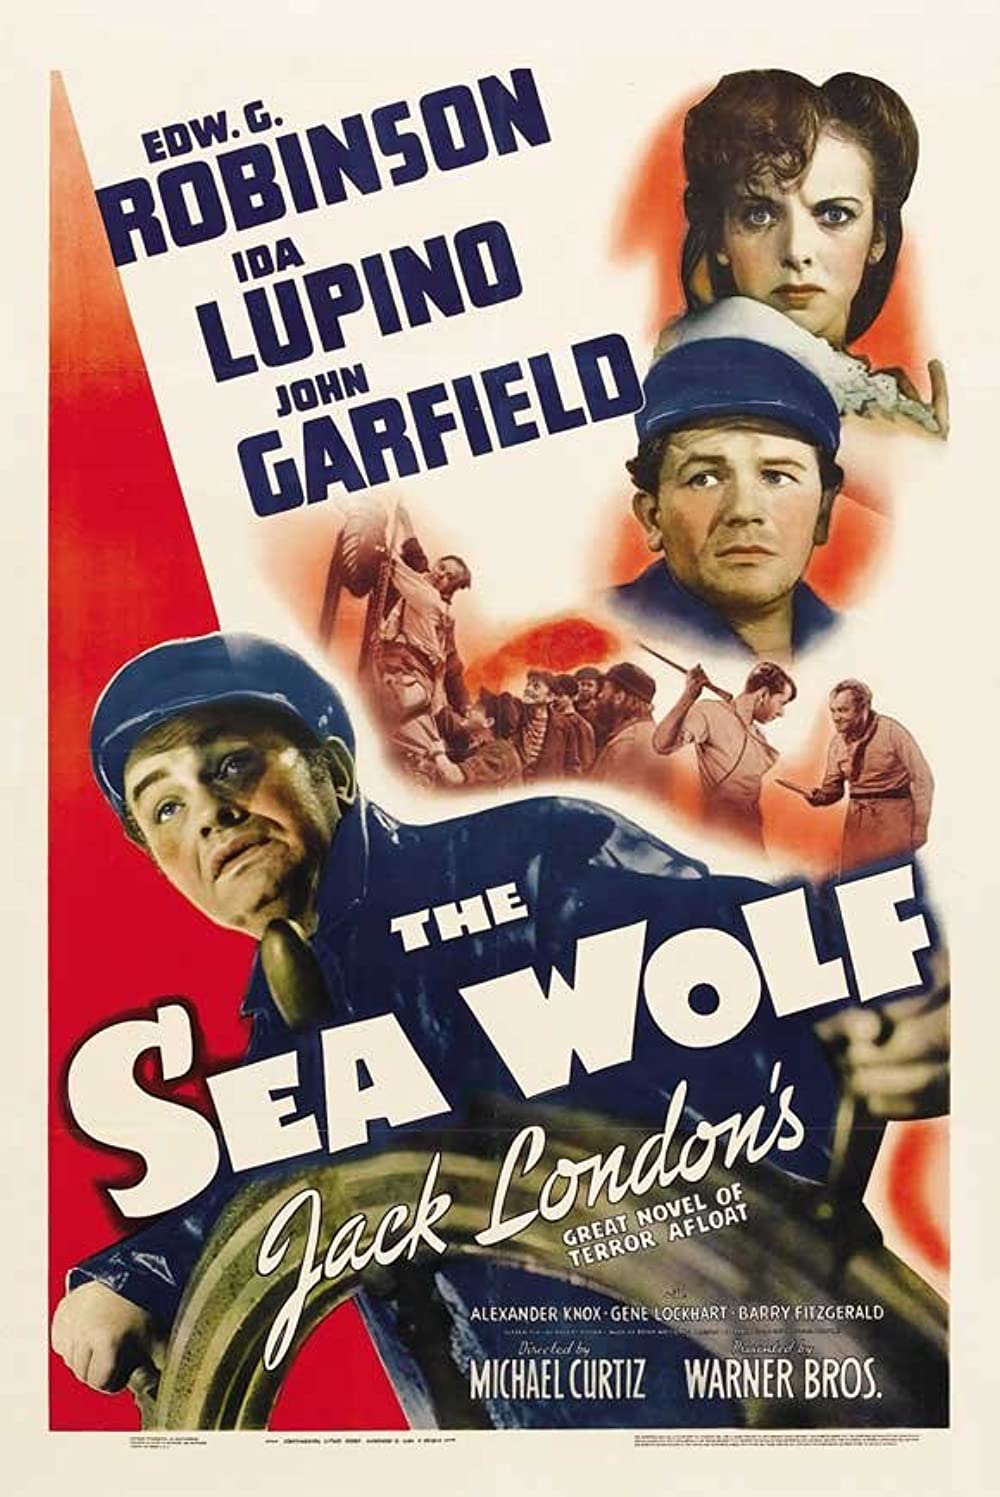 Filmbeschreibung zu The Sea Wolf